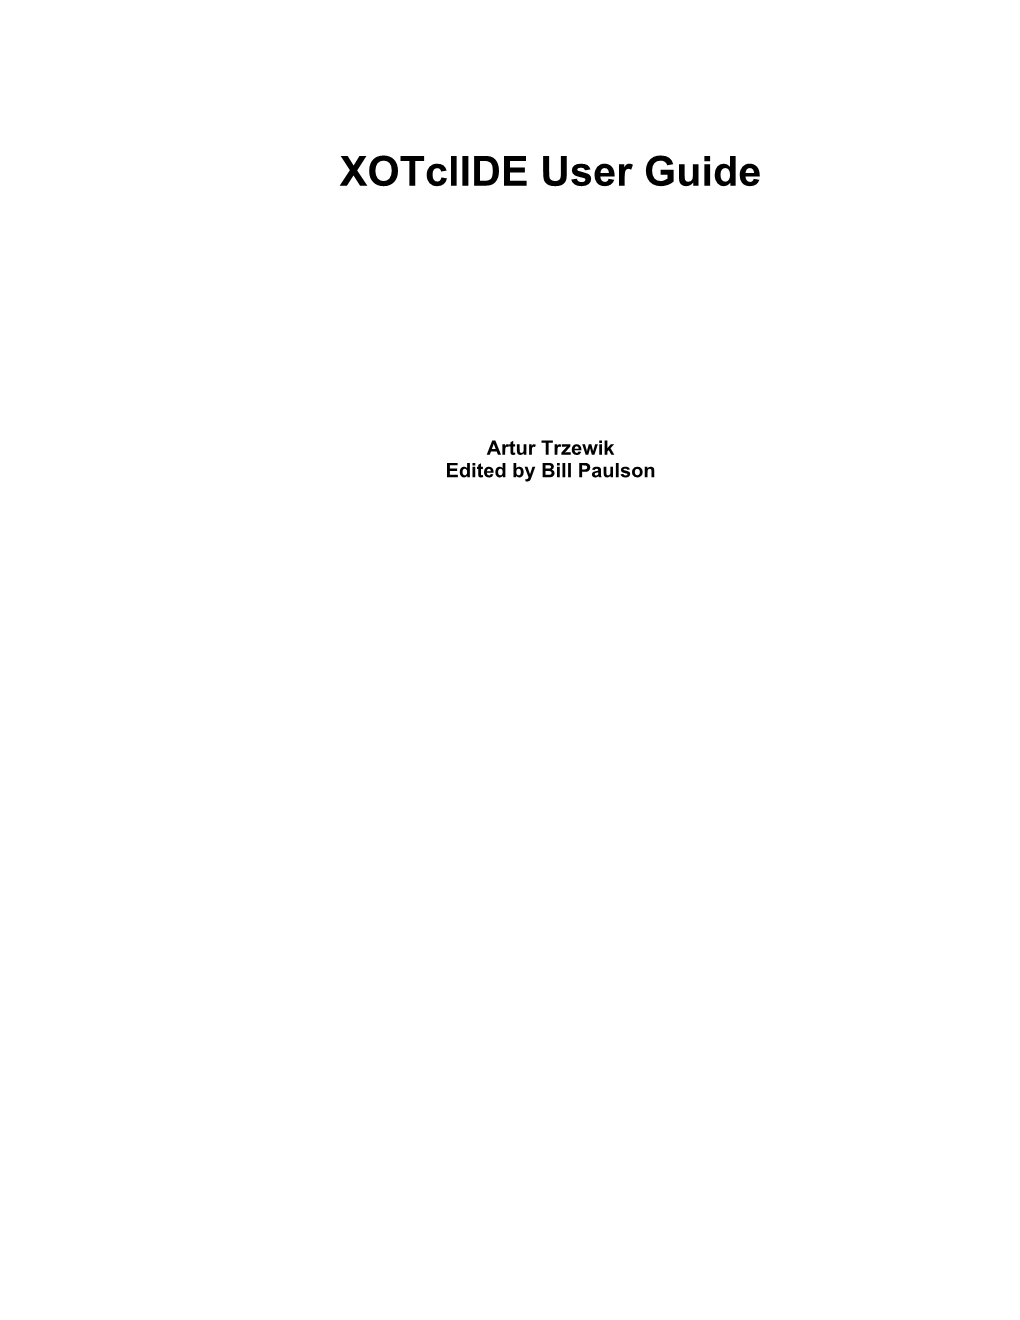 Xotclide User Guide